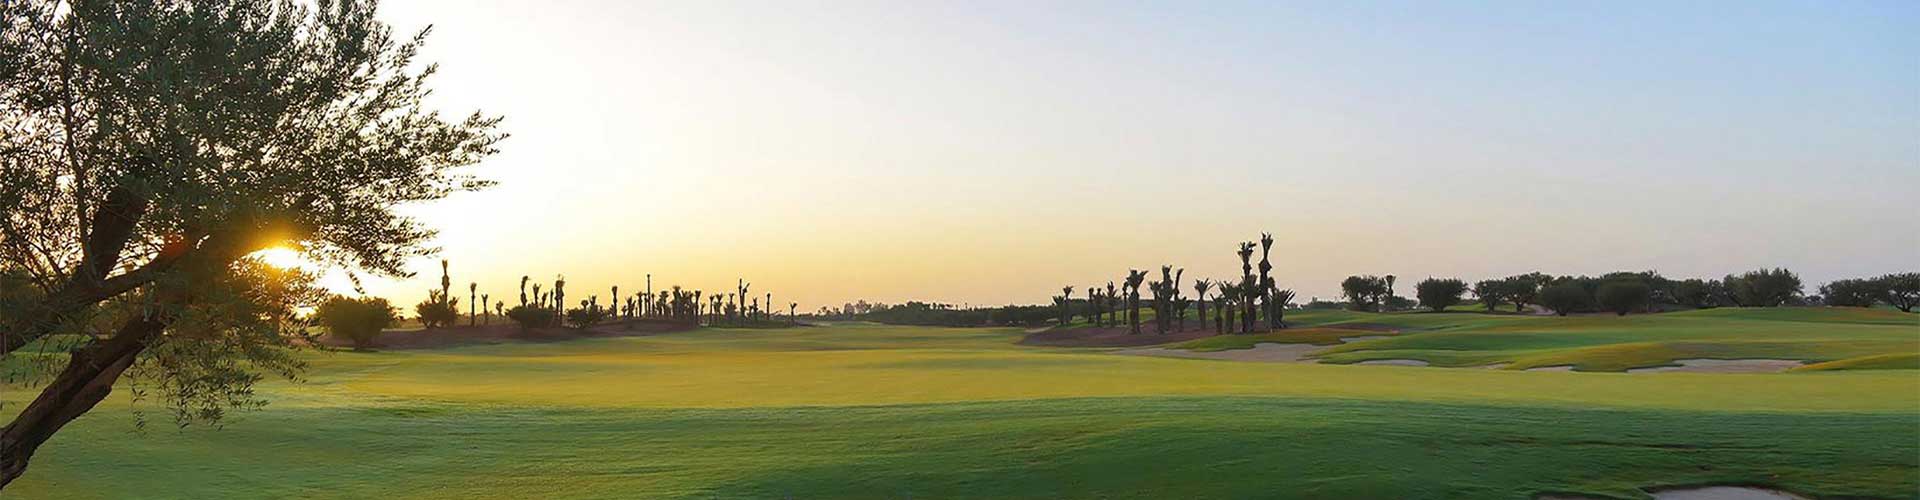 Séjour Golf hotels Marrakech